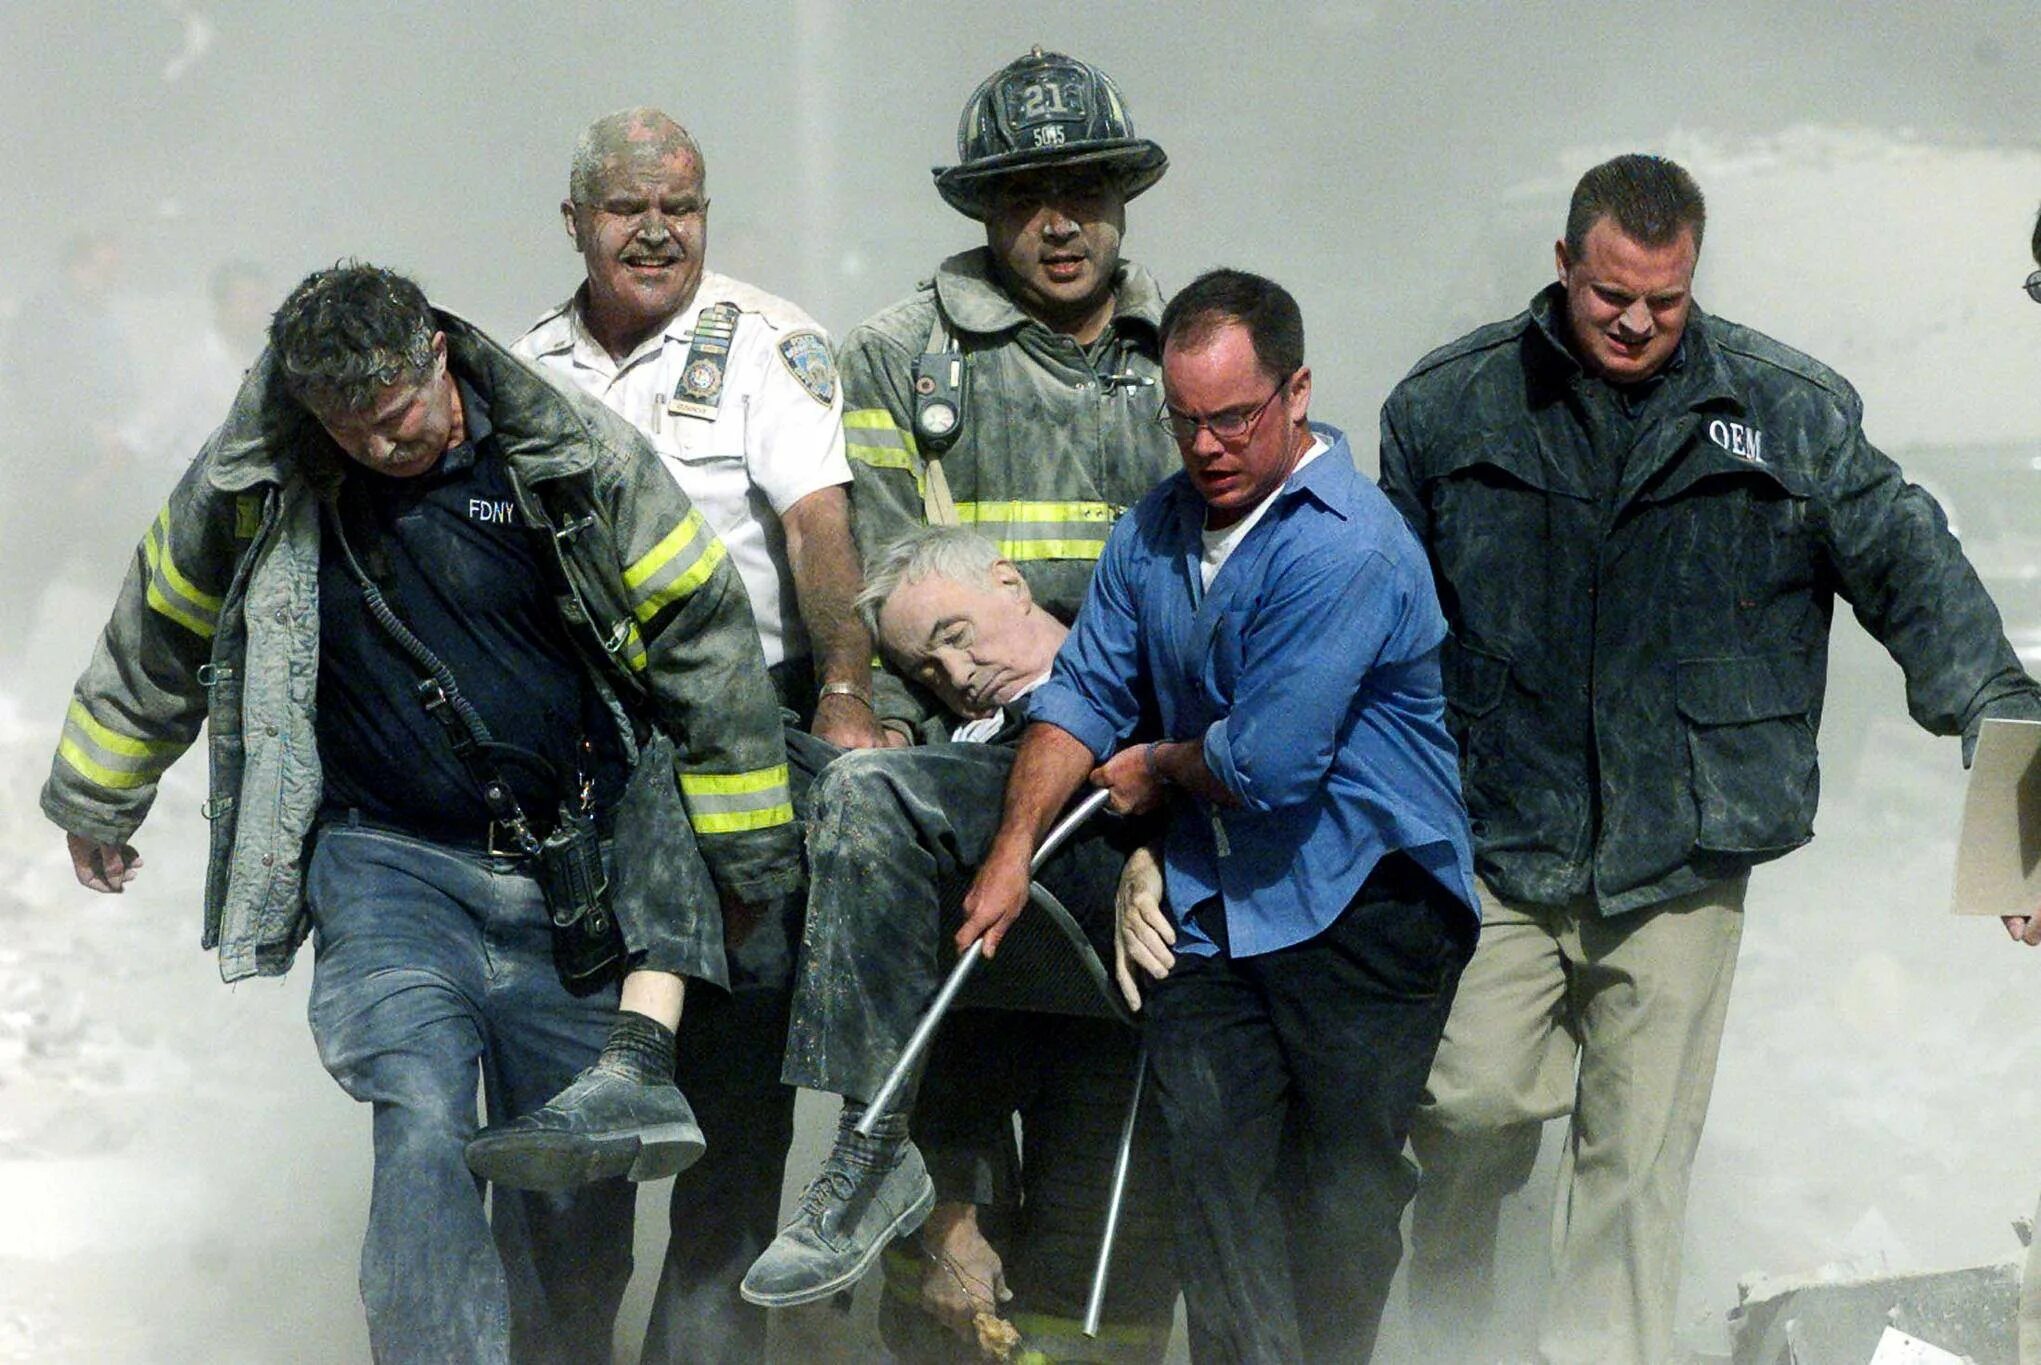 Теракт башен близнецов 11 сентября 2001. Спасатели 11 сентября 2001. Теракт в Нью-Йорке 11 сентября 2001. Башни Близнецы 11 сентября жертвы. Число погибших 11 сентября 2001.